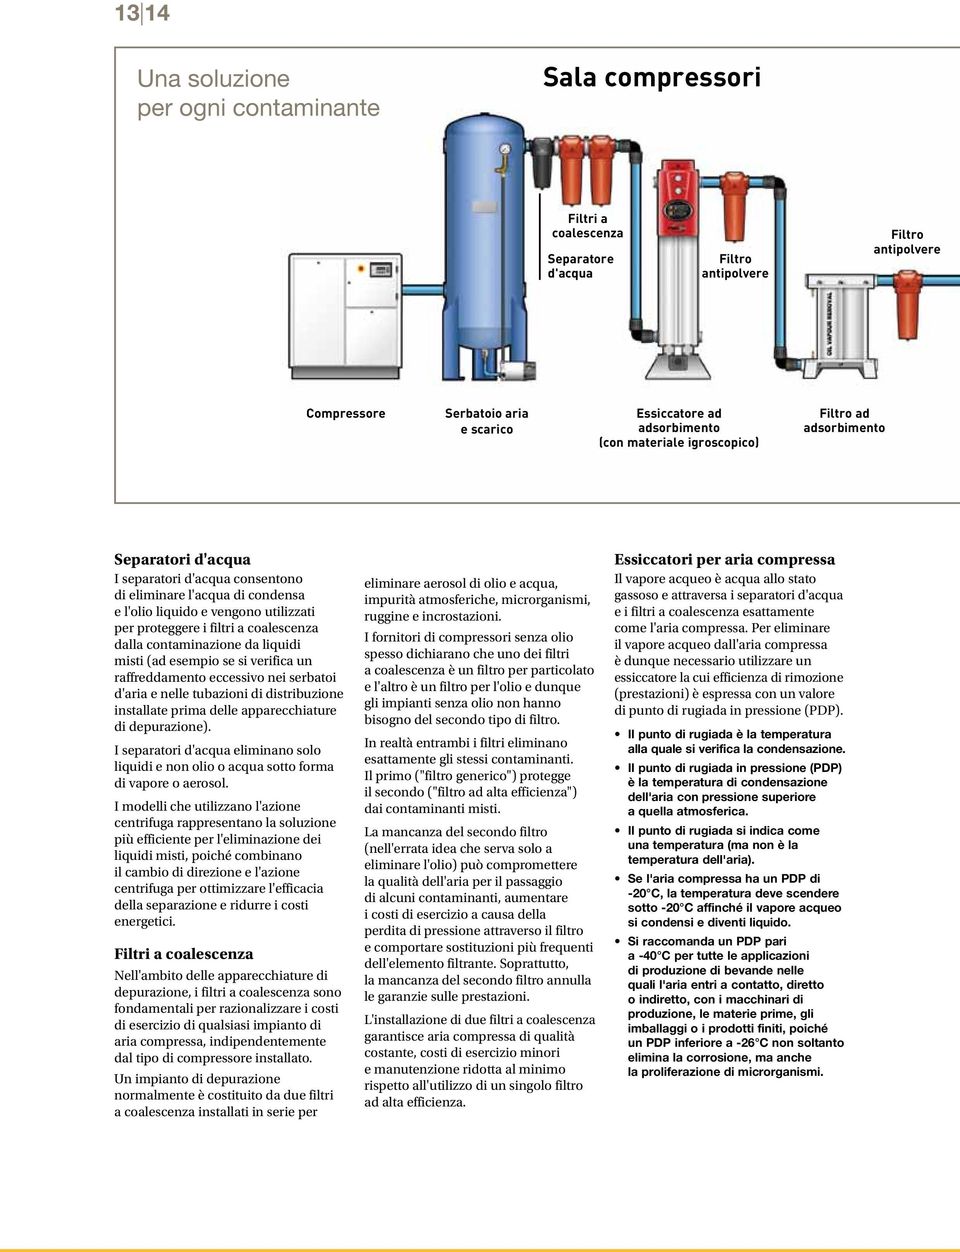 proteggere i filtri a coalescenza dalla contaminazione da liquidi misti (ad esempio se si verifica un raffreddamento eccessivo nei serbatoi d'aria e nelle tubazioni di distribuzione installate prima